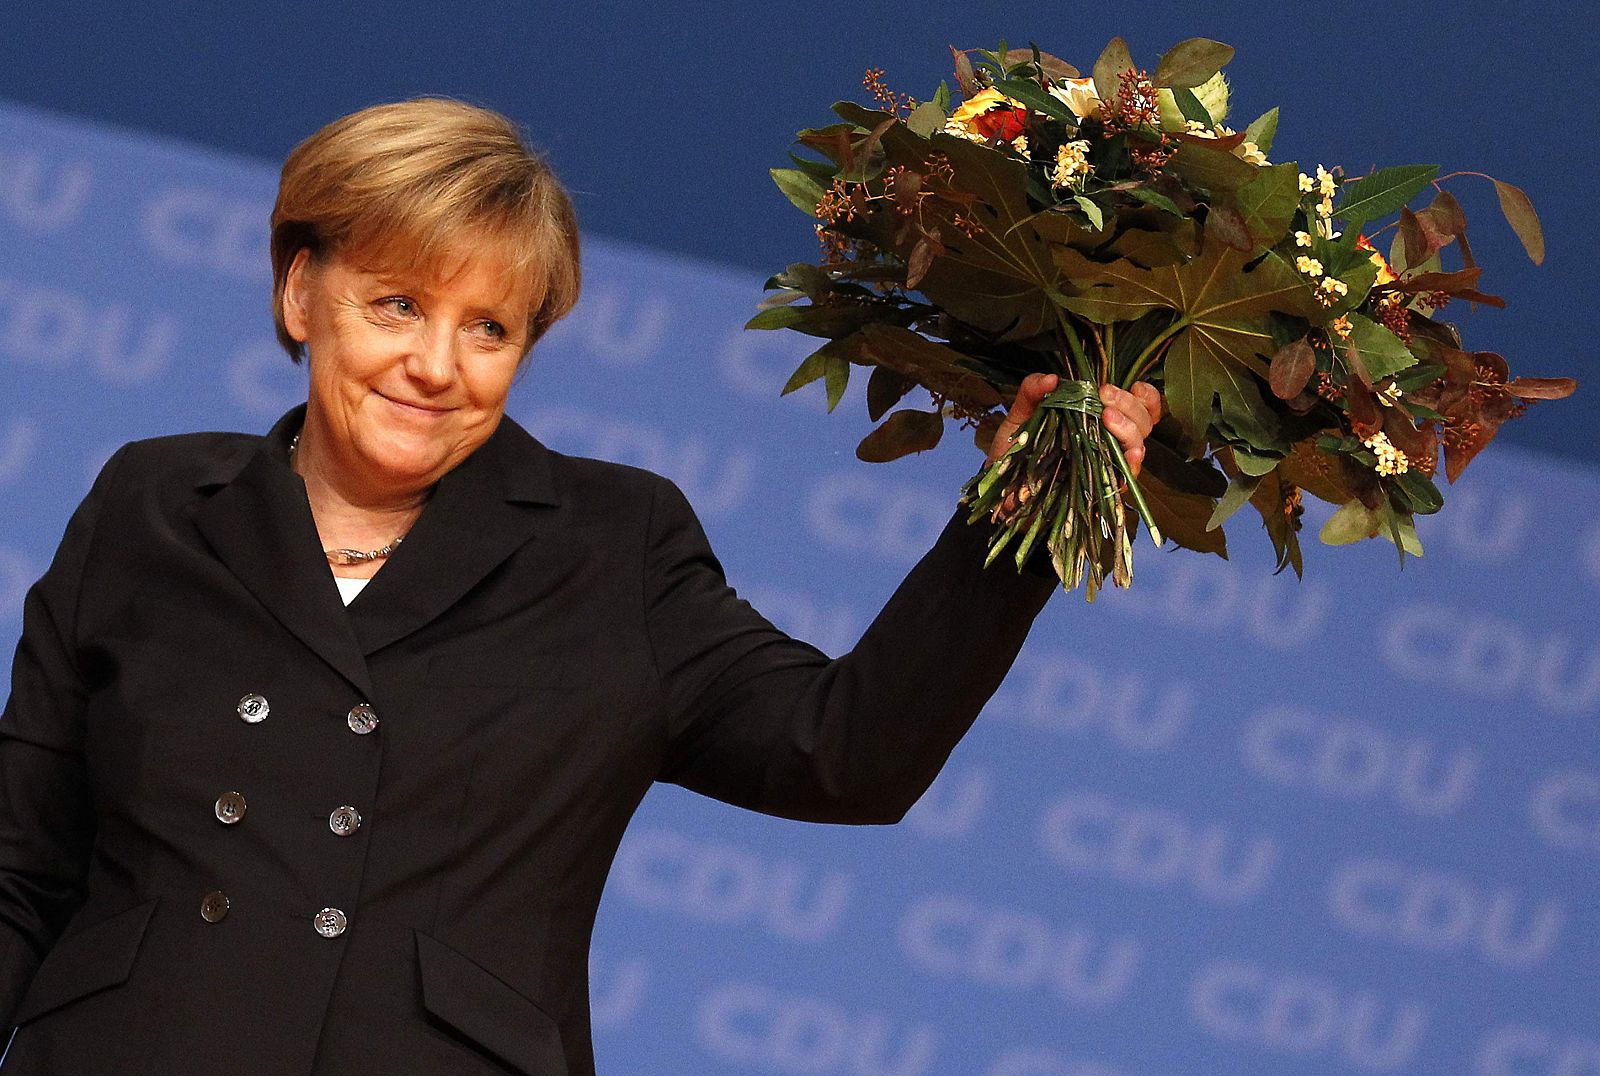 La canciller alemana, Angela Merkel, ha recibido una gran ovación tras ser reelegida como presidenta del partido Unión Democristiana.